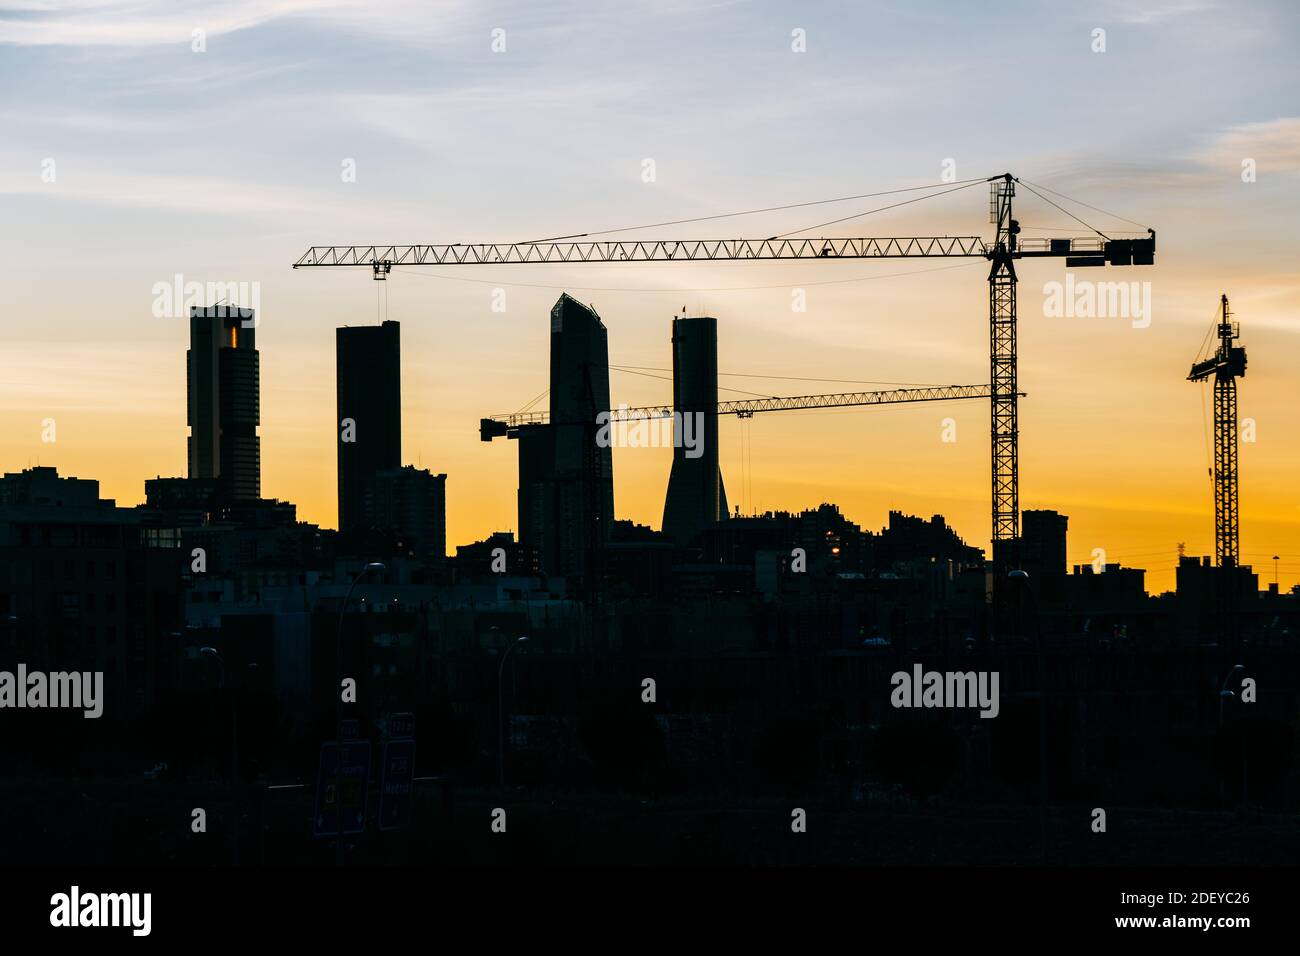 Cuatro Torres Business Area skyline di Madrid al tramonto con gru da costruzione ed edifici residenziali in una vista ravvicinata. Toni arancioni e contast. Foto Stock